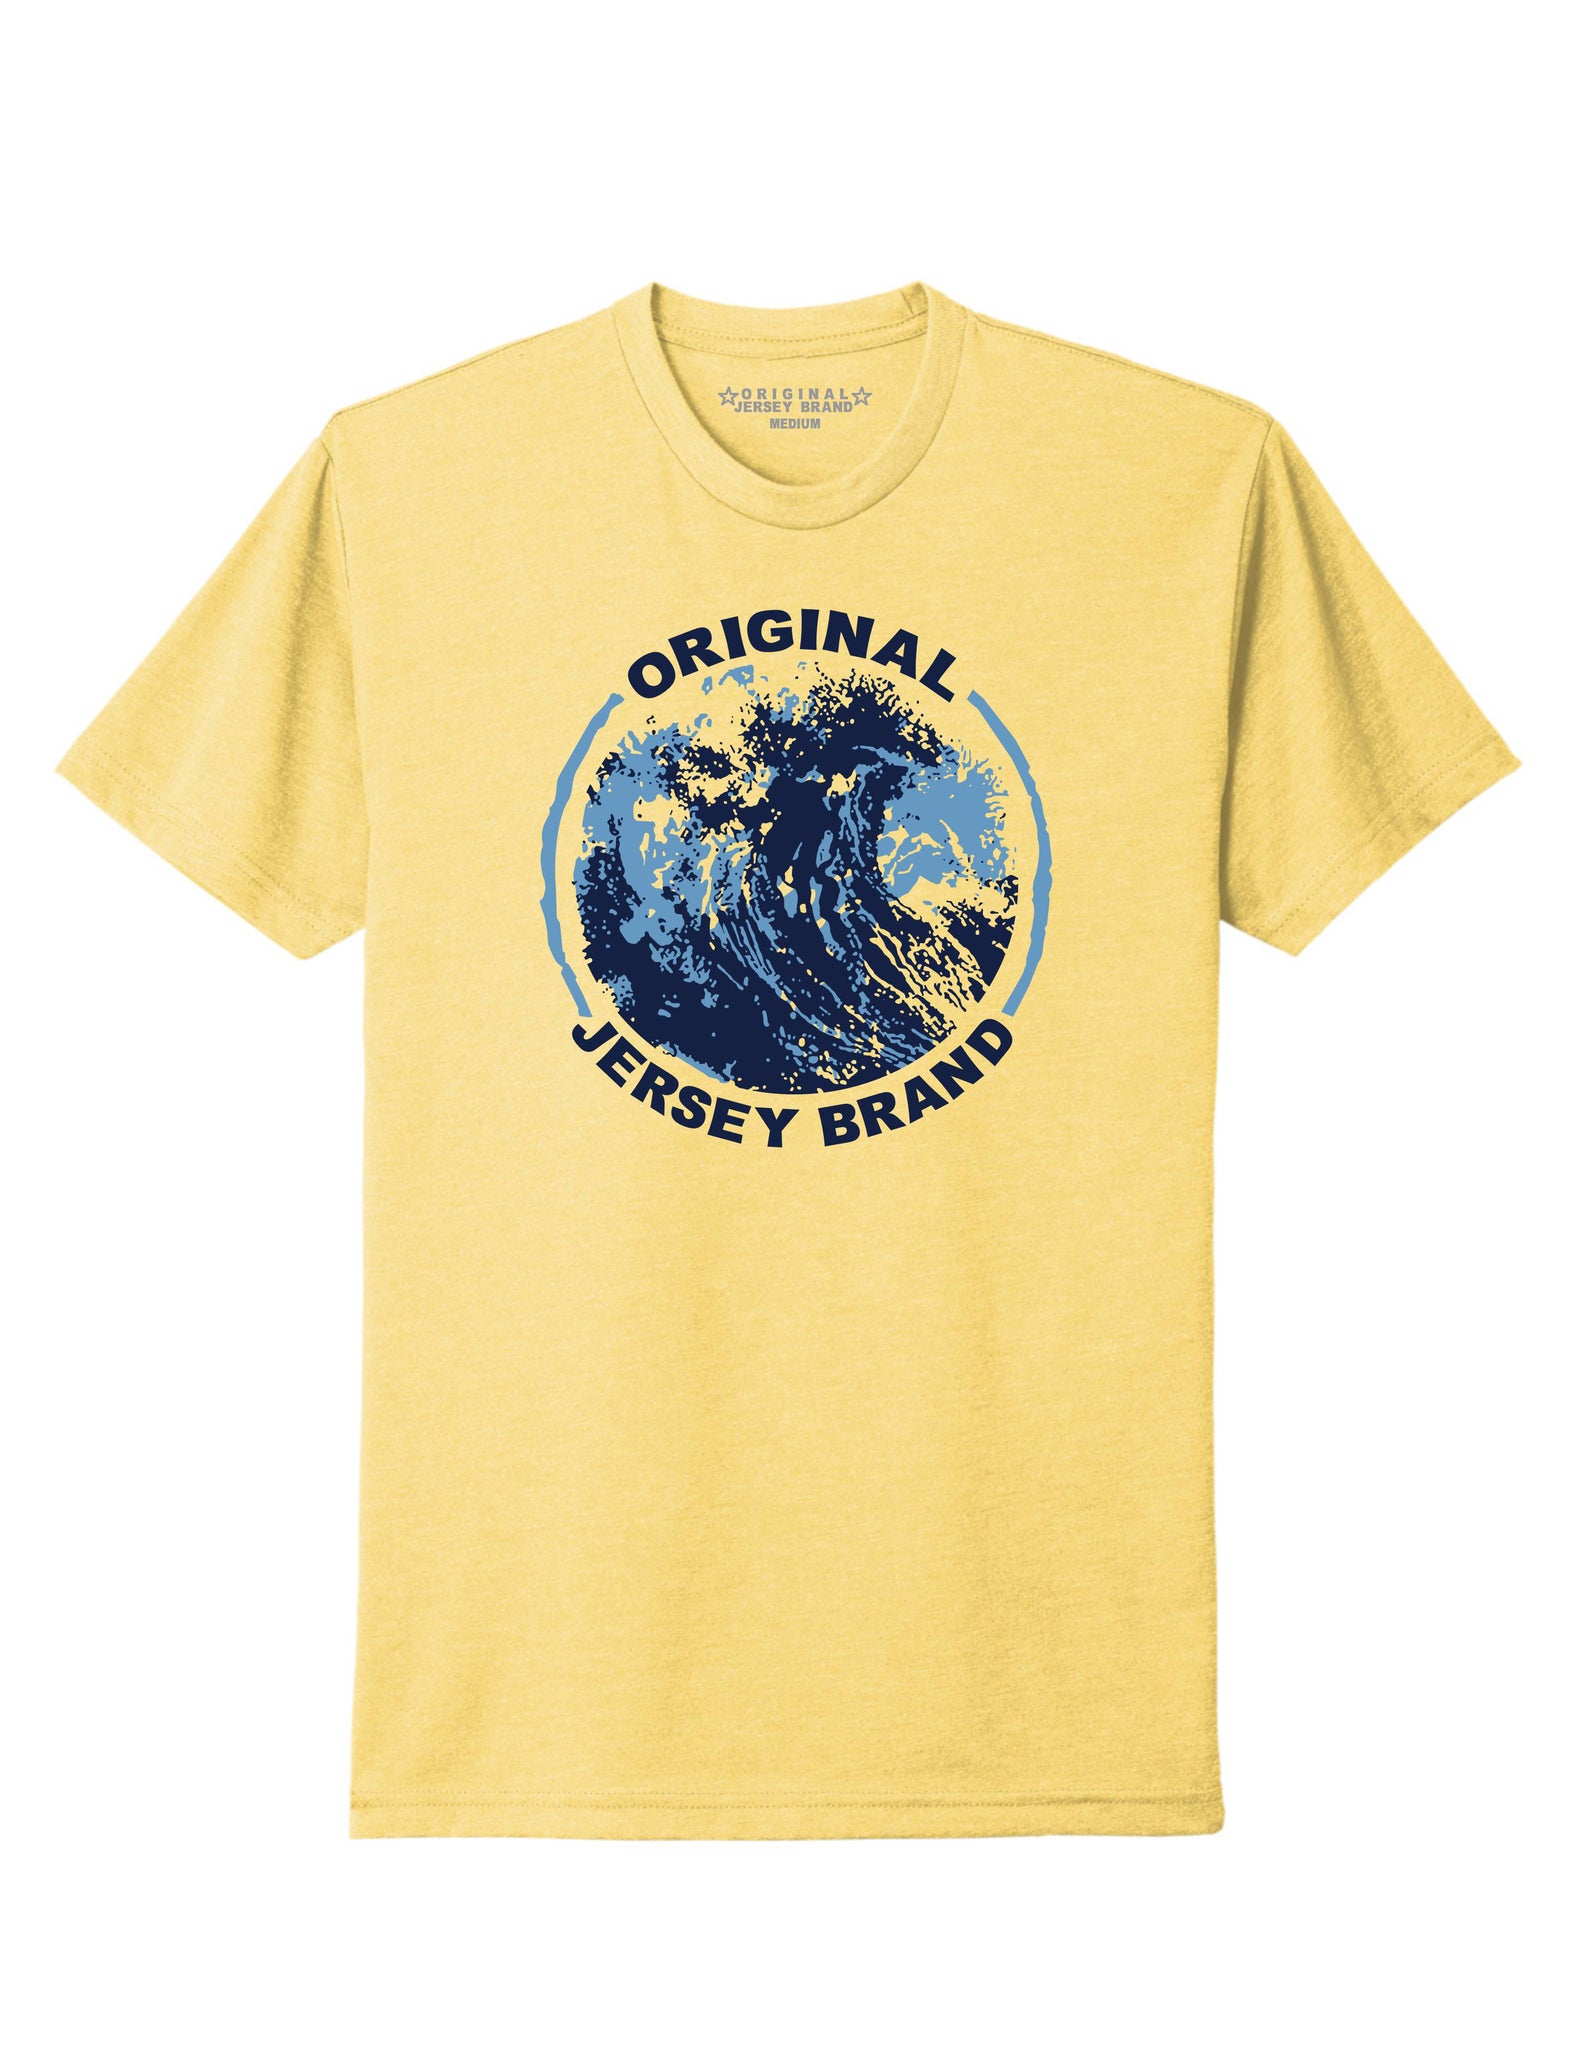 Super Soft Cotton/Poly Blend T-Shirt (Banana Cream) – NJSpiritWear LLC